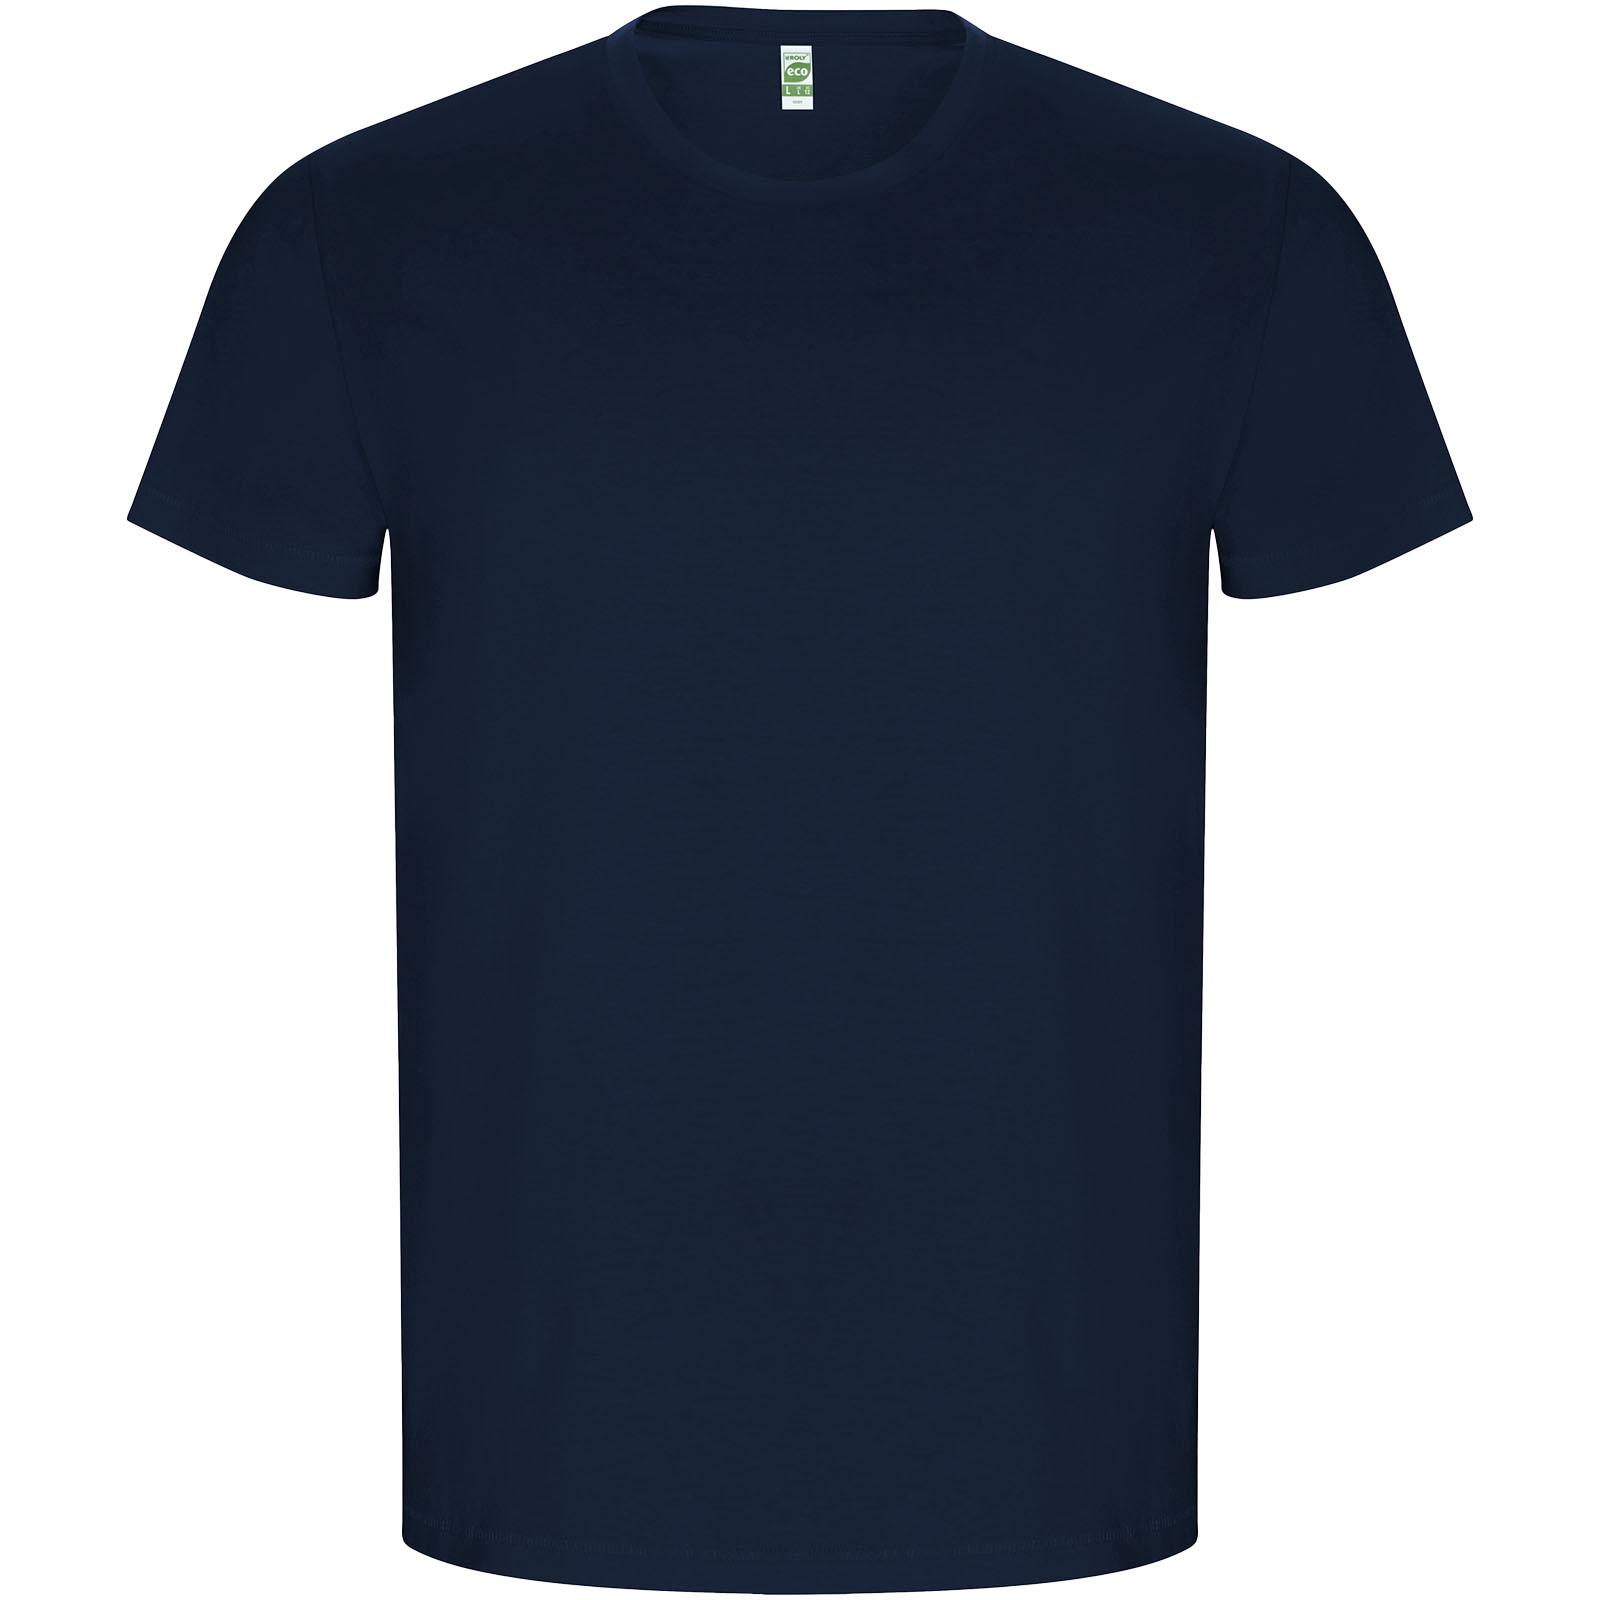 Advertising T-shirts - Golden short sleeve men's t-shirt